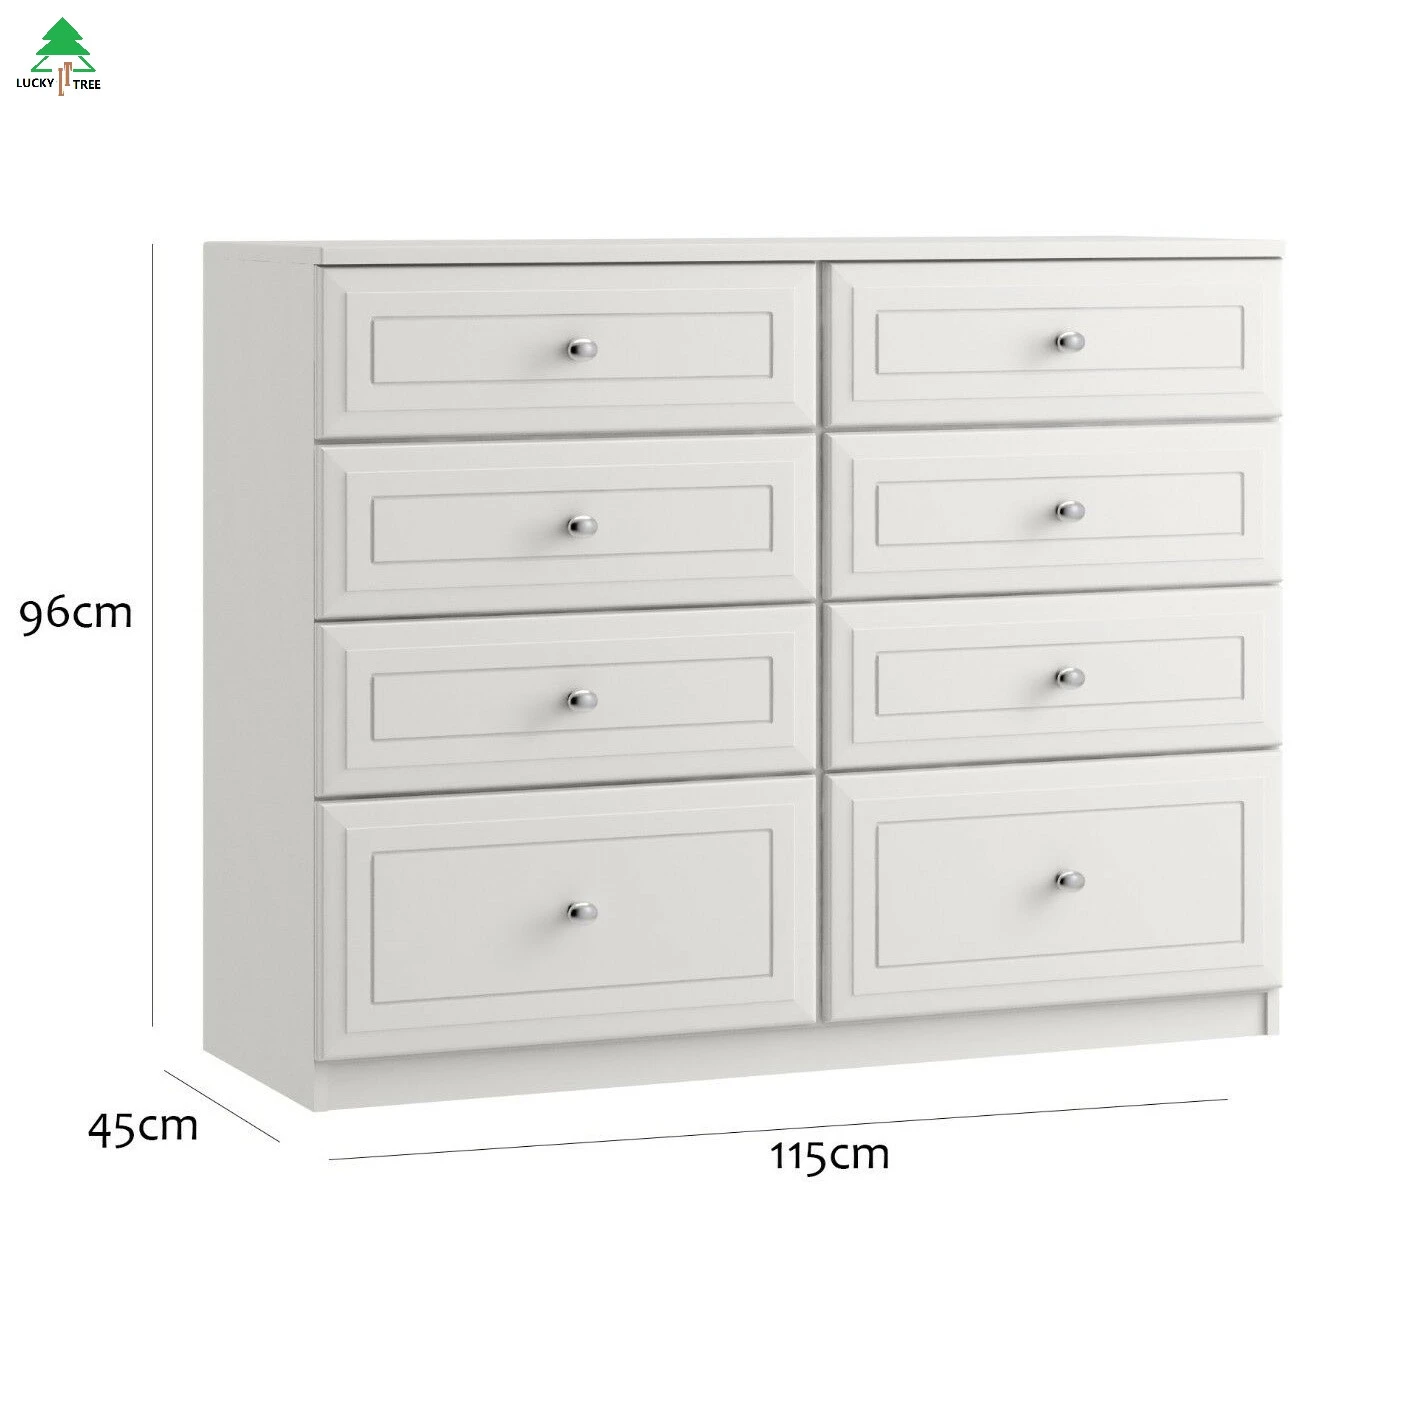 PVC door 8 drawers  cabinet bedroom furniture